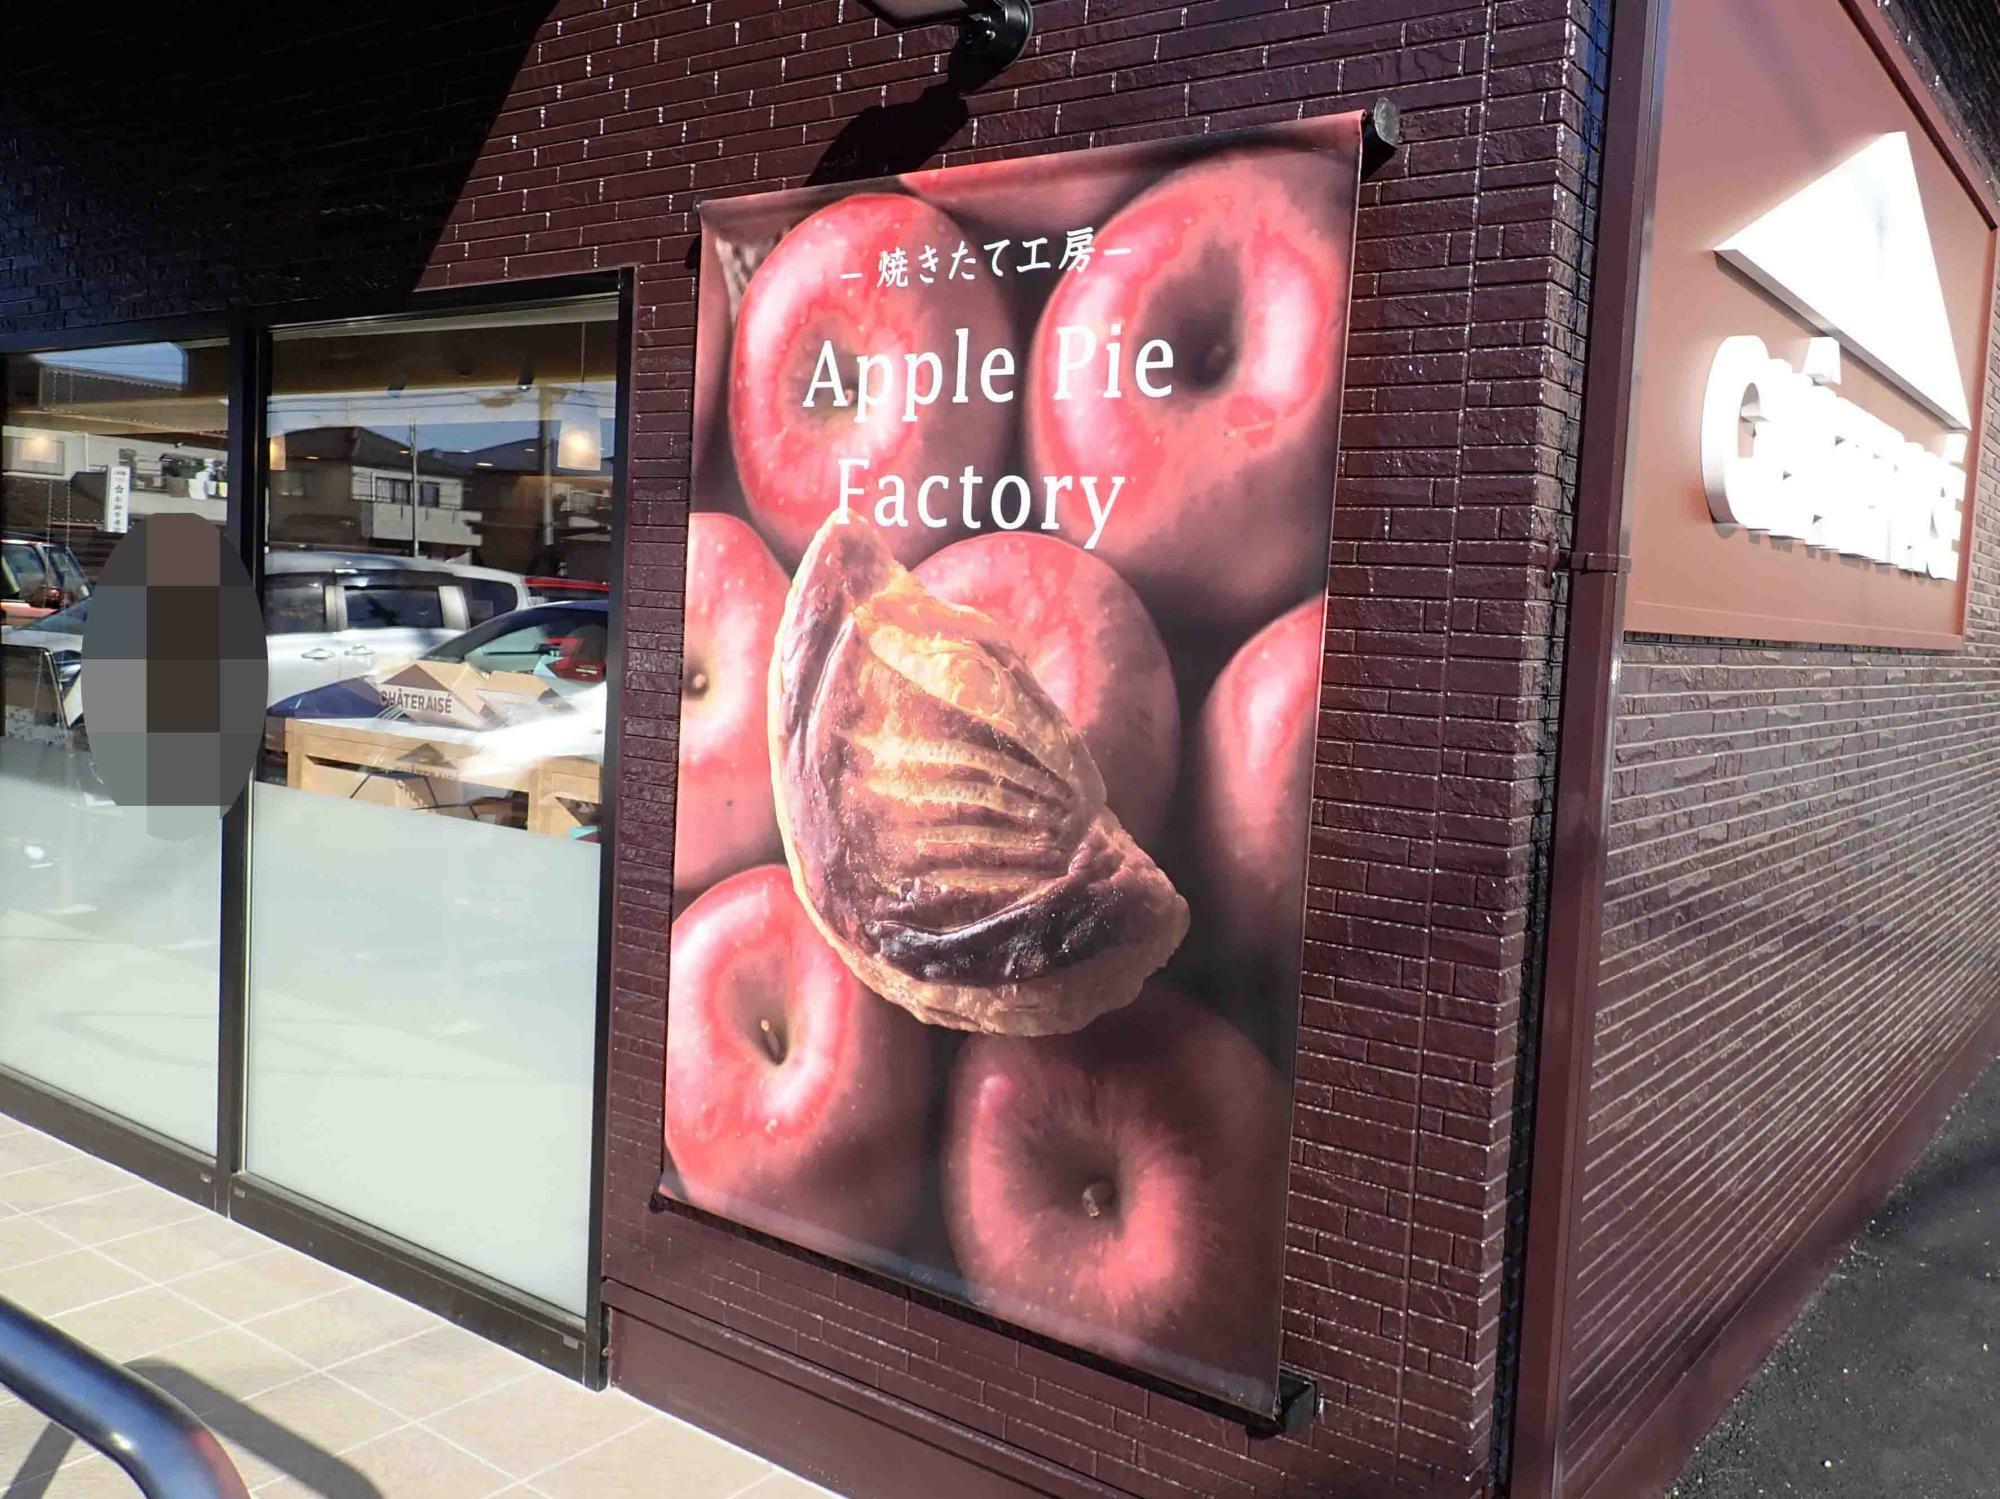 アップルパイも美味しそうです